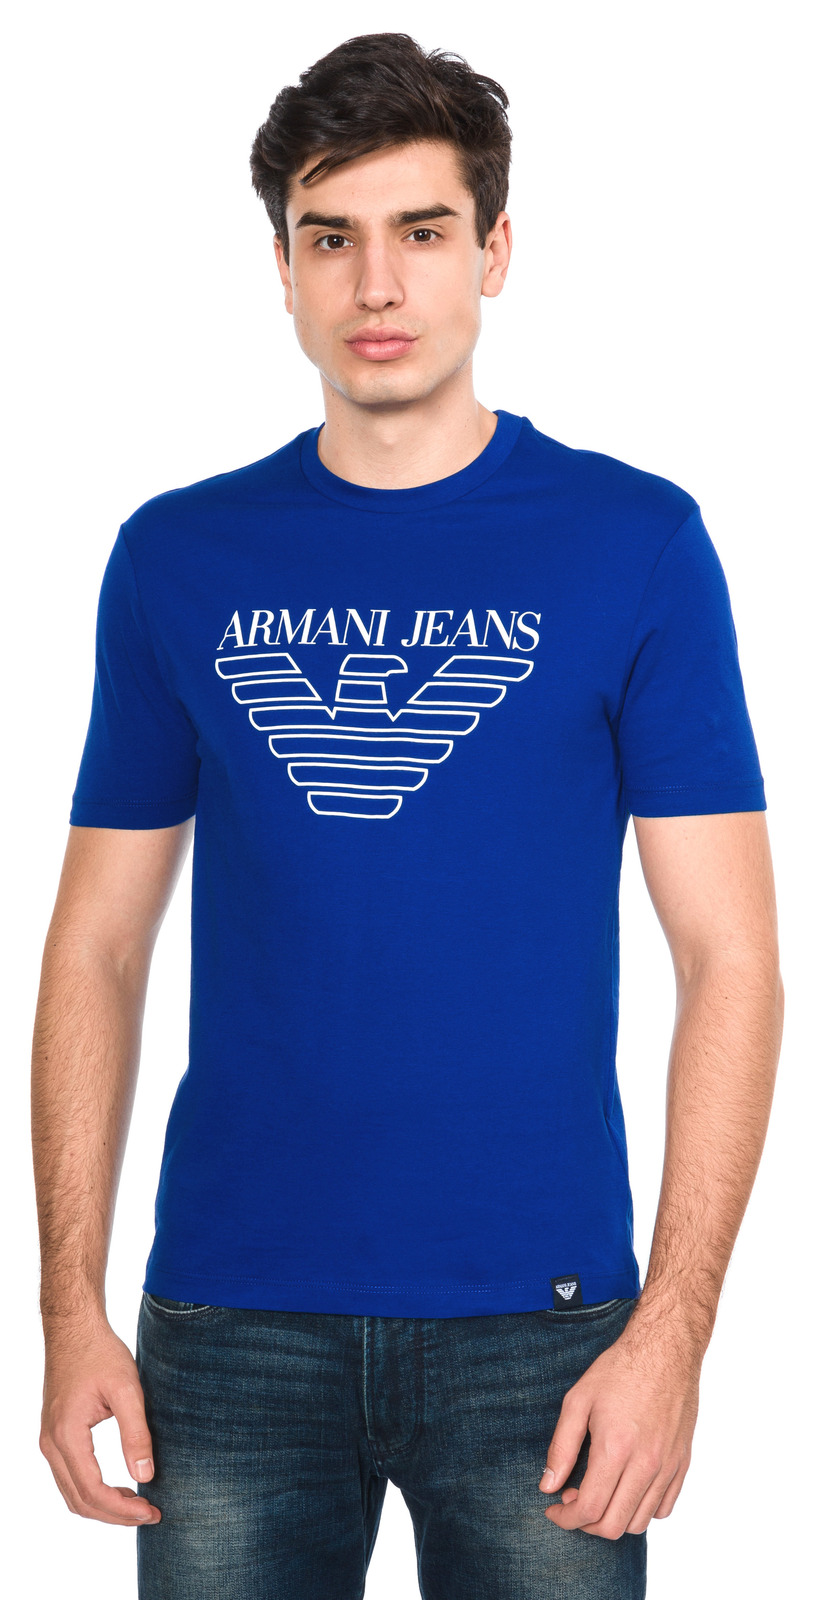 Armani Jeans Póló L, Kék fotója